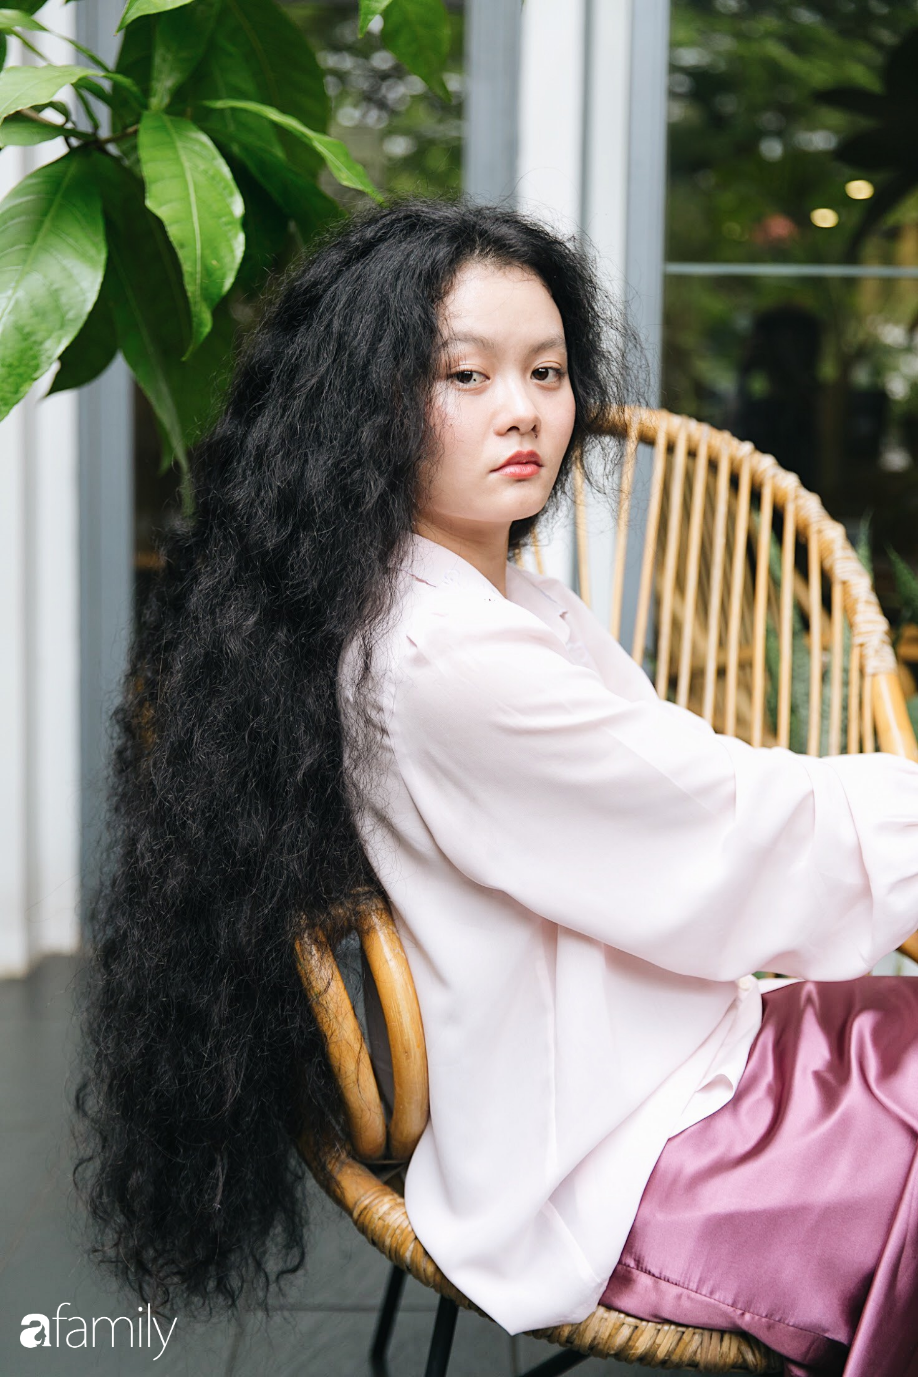 Công chúa tóc mây" gốc Việt nổi tiếng MXH chia sẻ bí quyết khiến tình yêu  cứ mãi đẹp như cổ tích